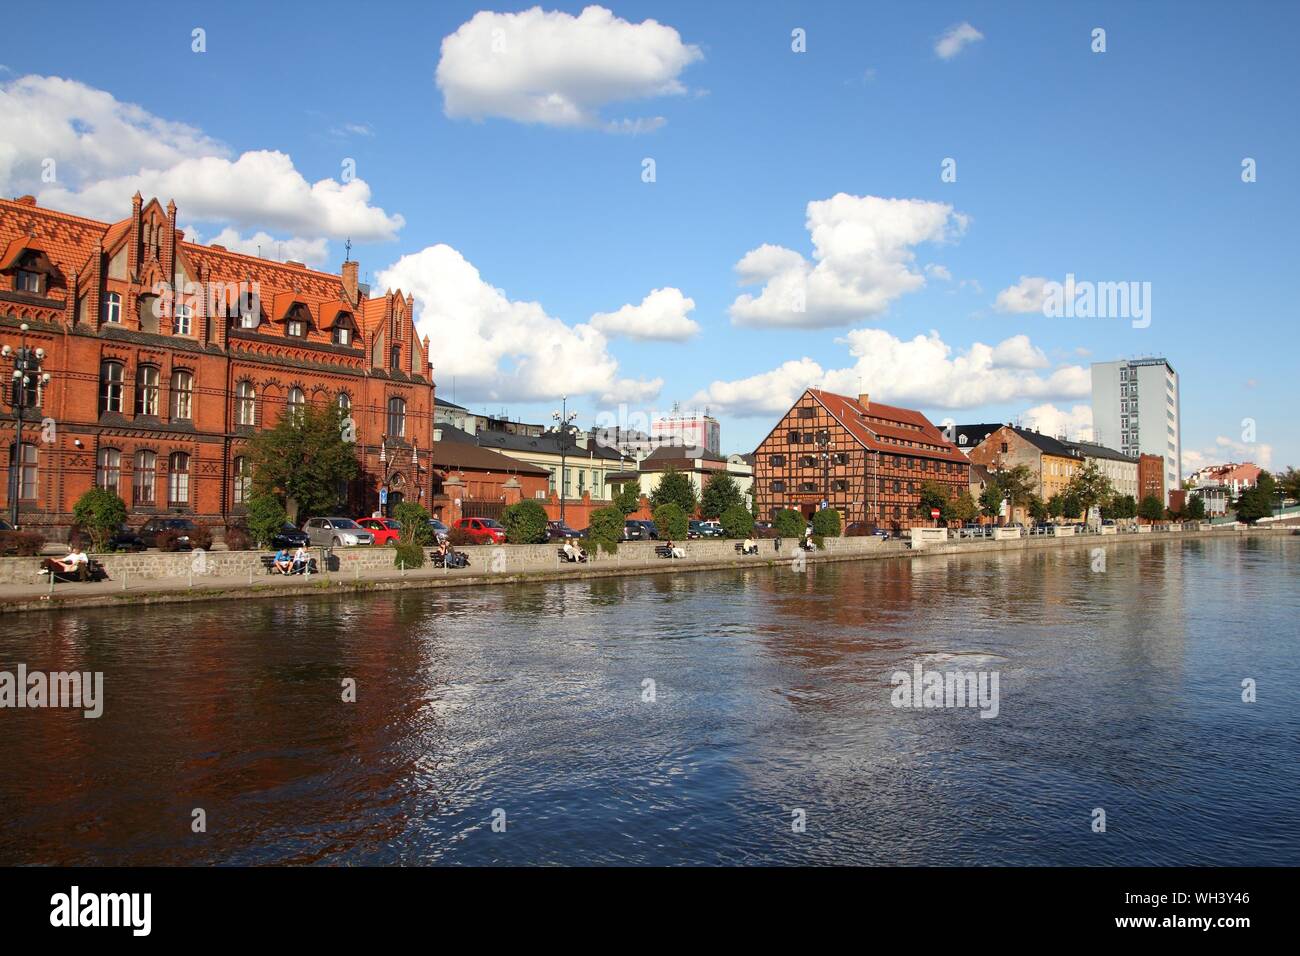 BYDGOSZCZ, Polen - 4. SEPTEMBER: Menschen besuchen Riverfront am 4. September 2010 in Bydgoszcz. Bydgoszcz ist die Hauptstadt der Region Kujawien-Pommern visi Stockfoto